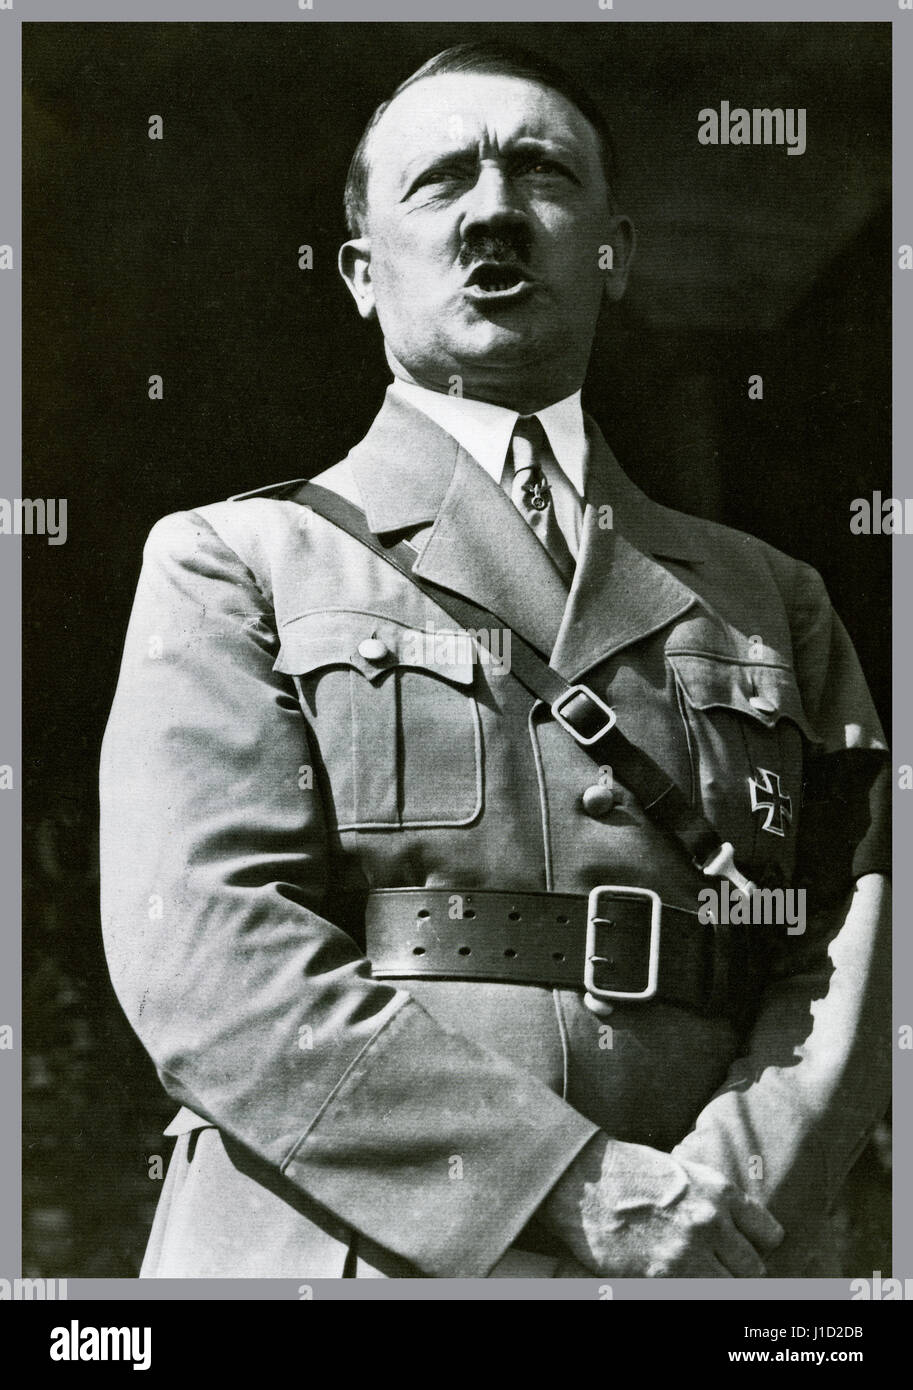 Adolf Hitler in uniforme che indossa un auto aggiudicati Croce di Ferro medaglia facendo un discorso a un rally di Gioventù Hitleriana a Norimberga in Germania 1934 Foto Stock